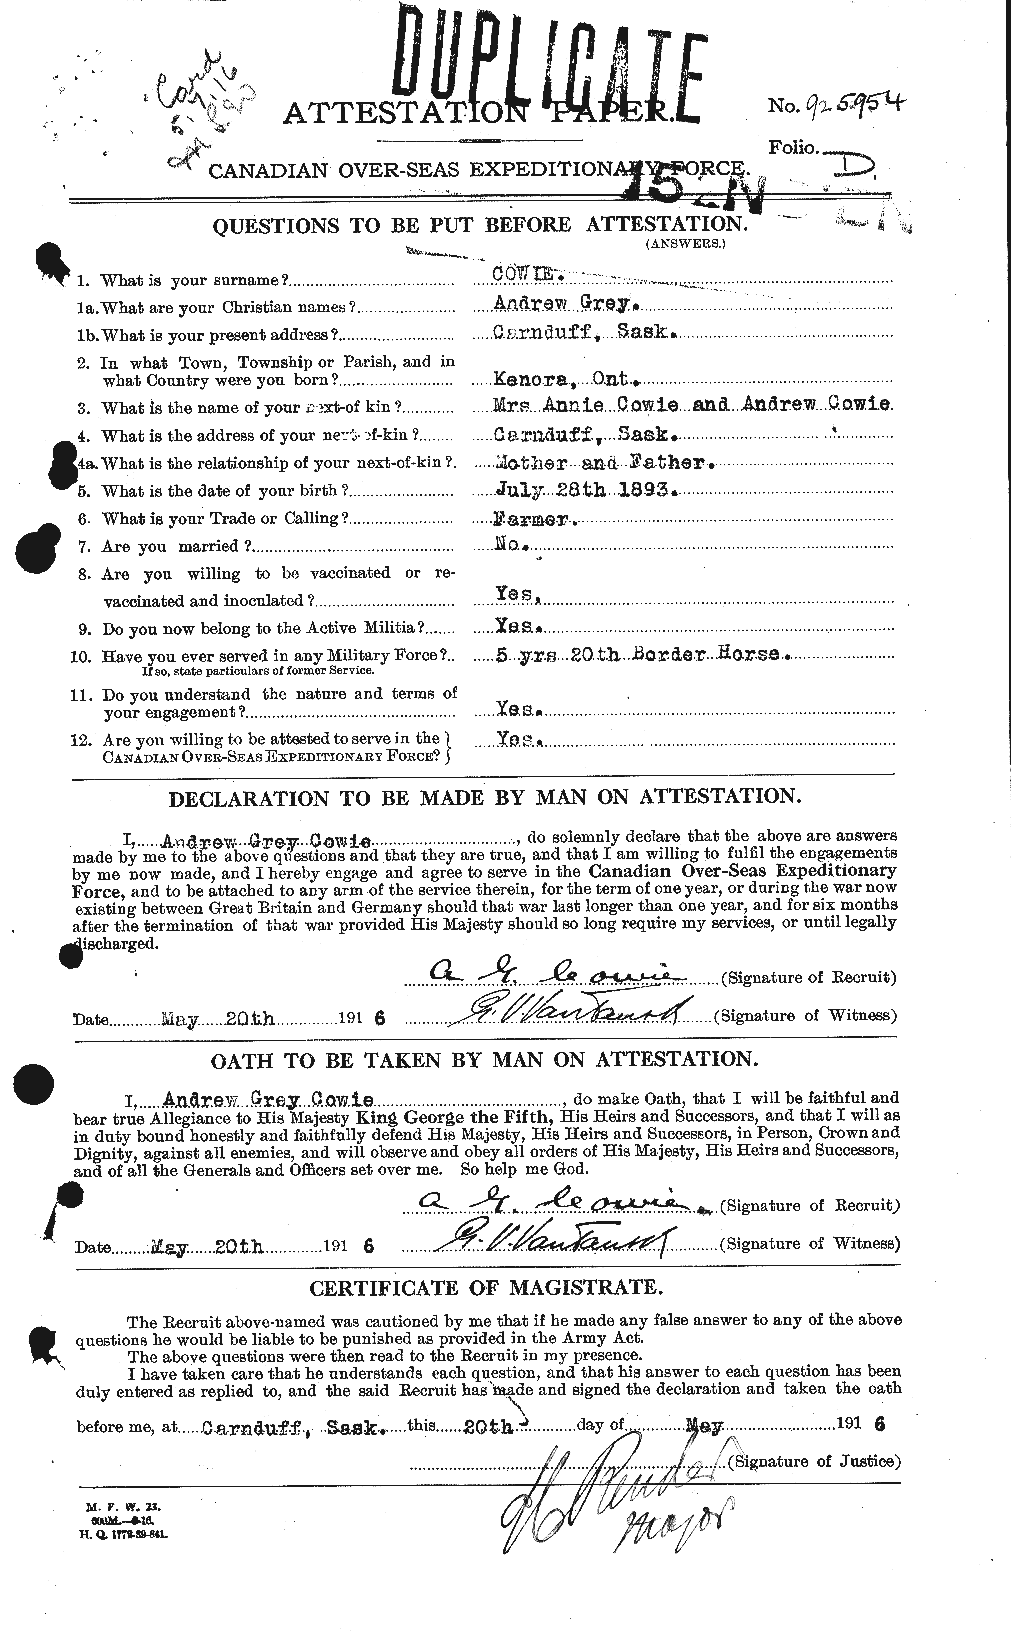 Dossiers du Personnel de la Première Guerre mondiale - CEC 060036a